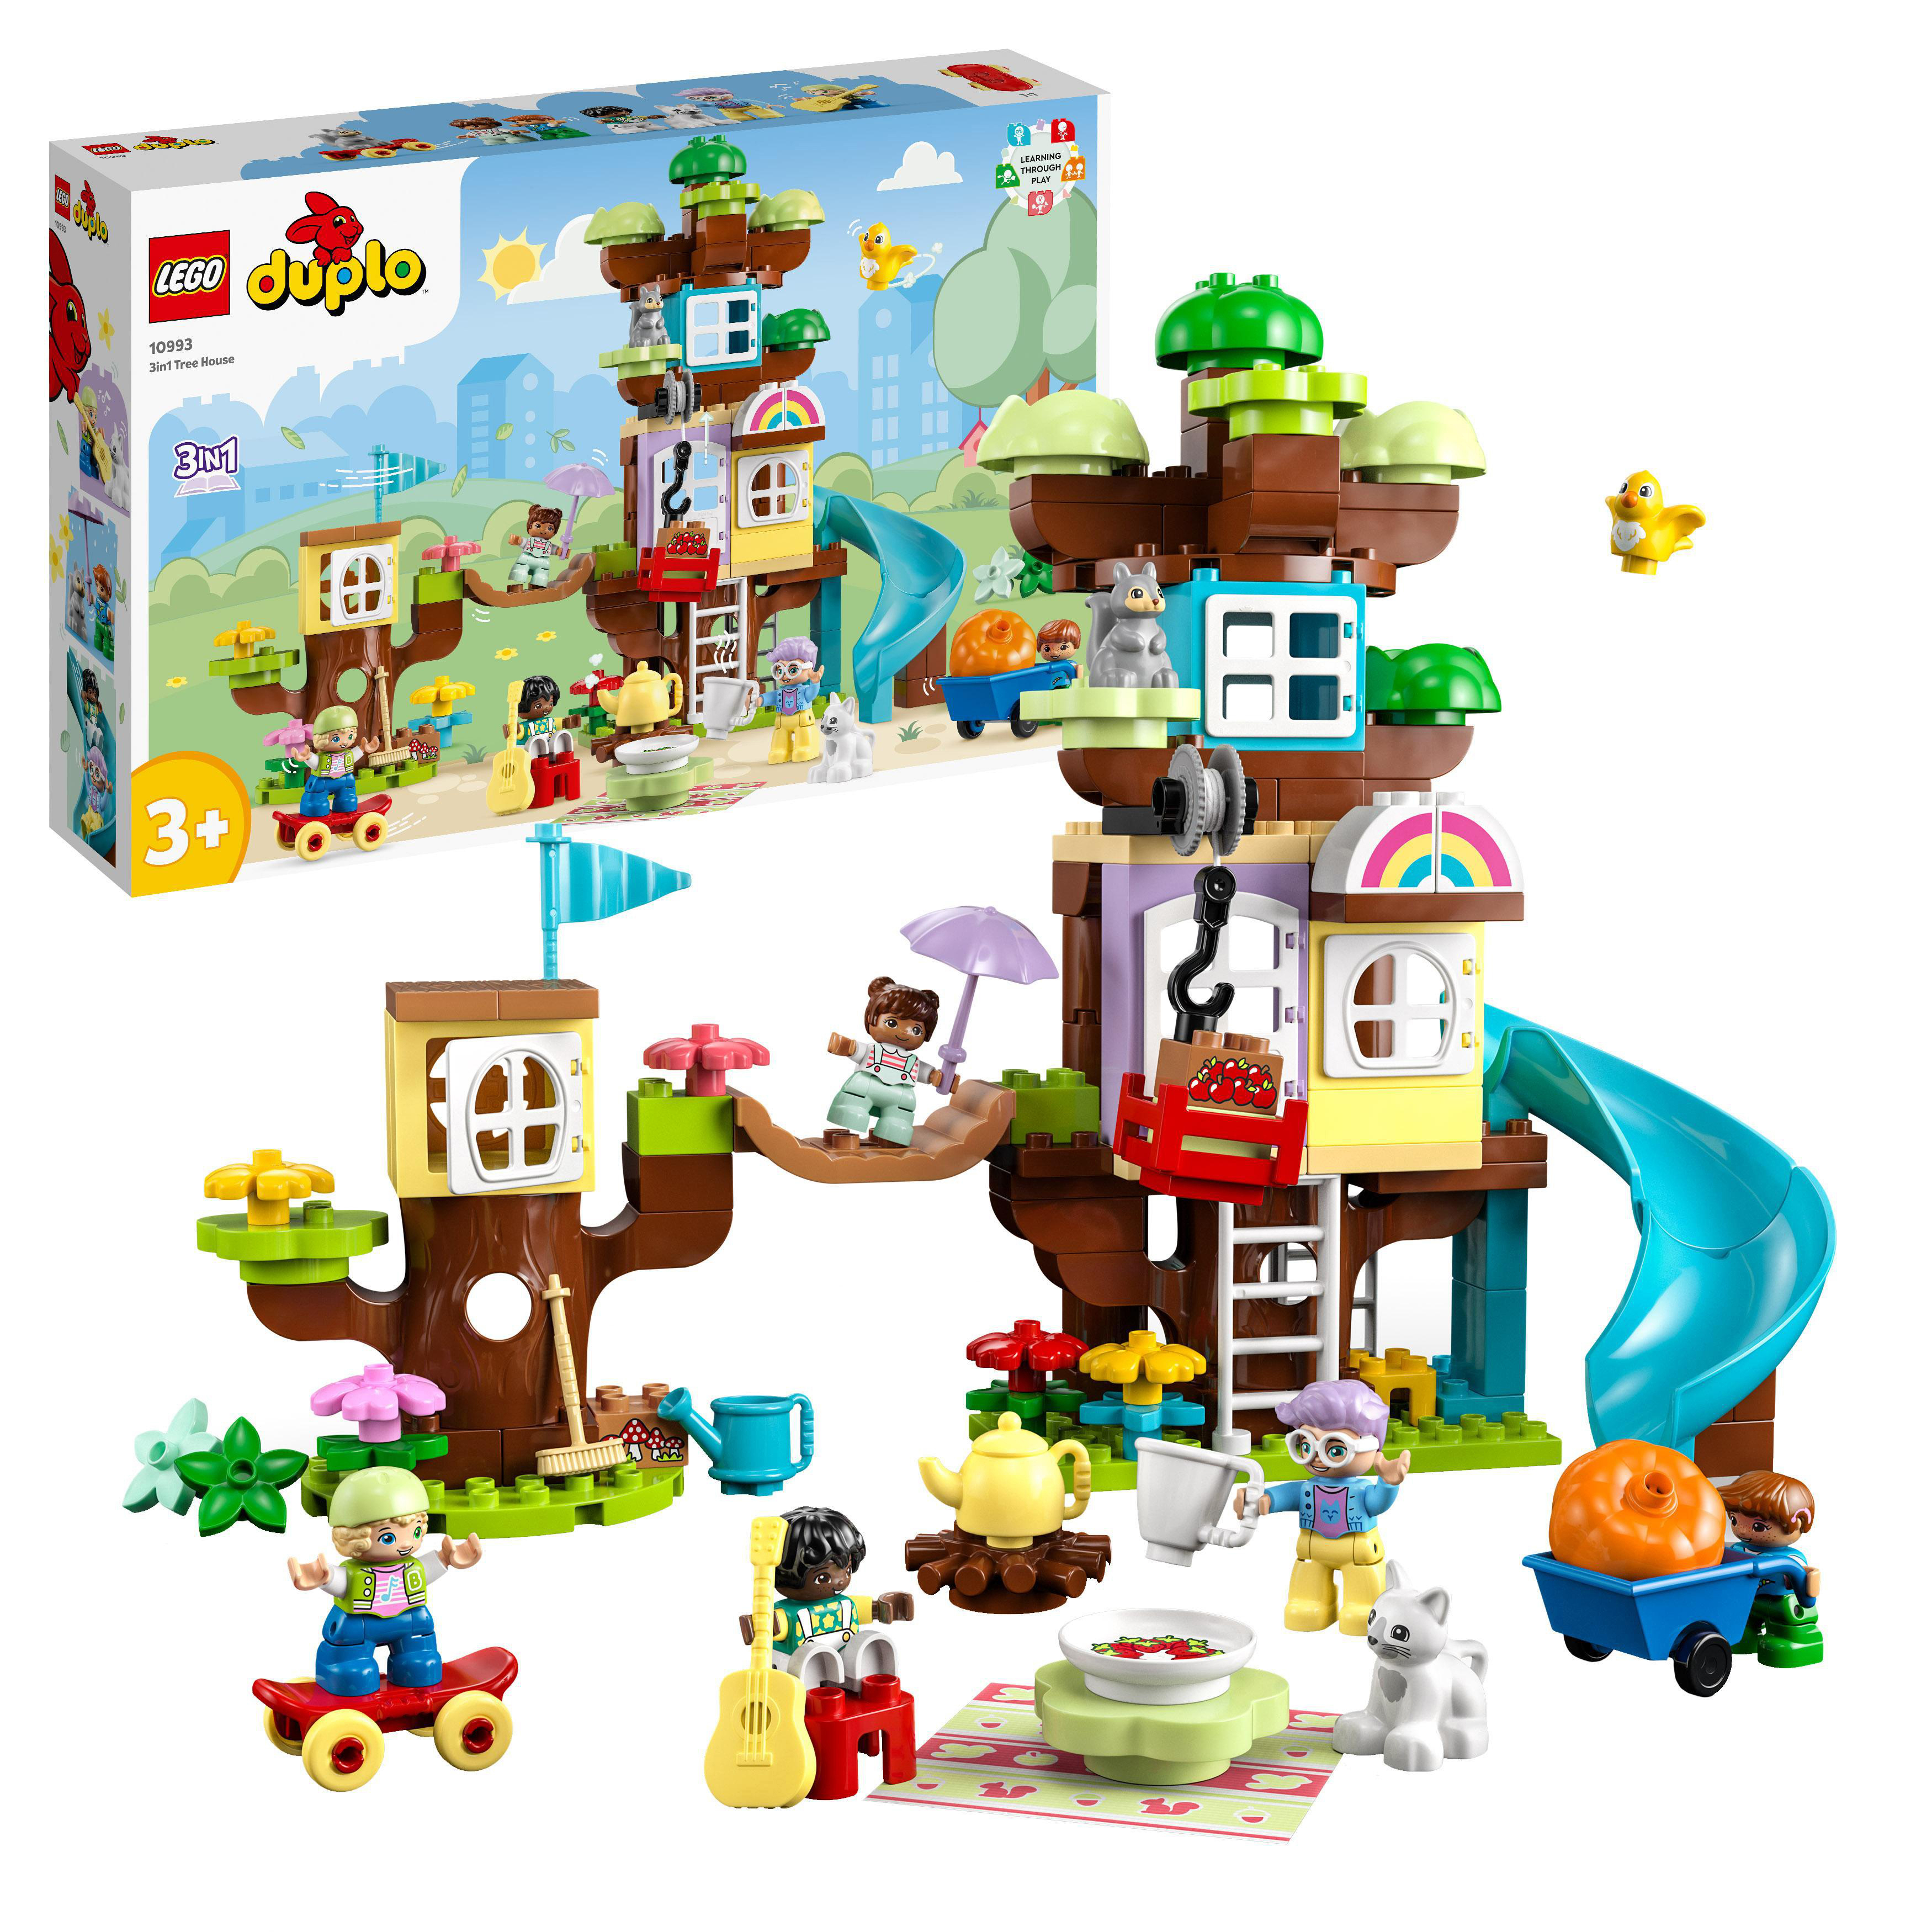 LEGO DUPLO Town 3-in-1-Baumhaus Mehrfarbig 10993 Bausatz